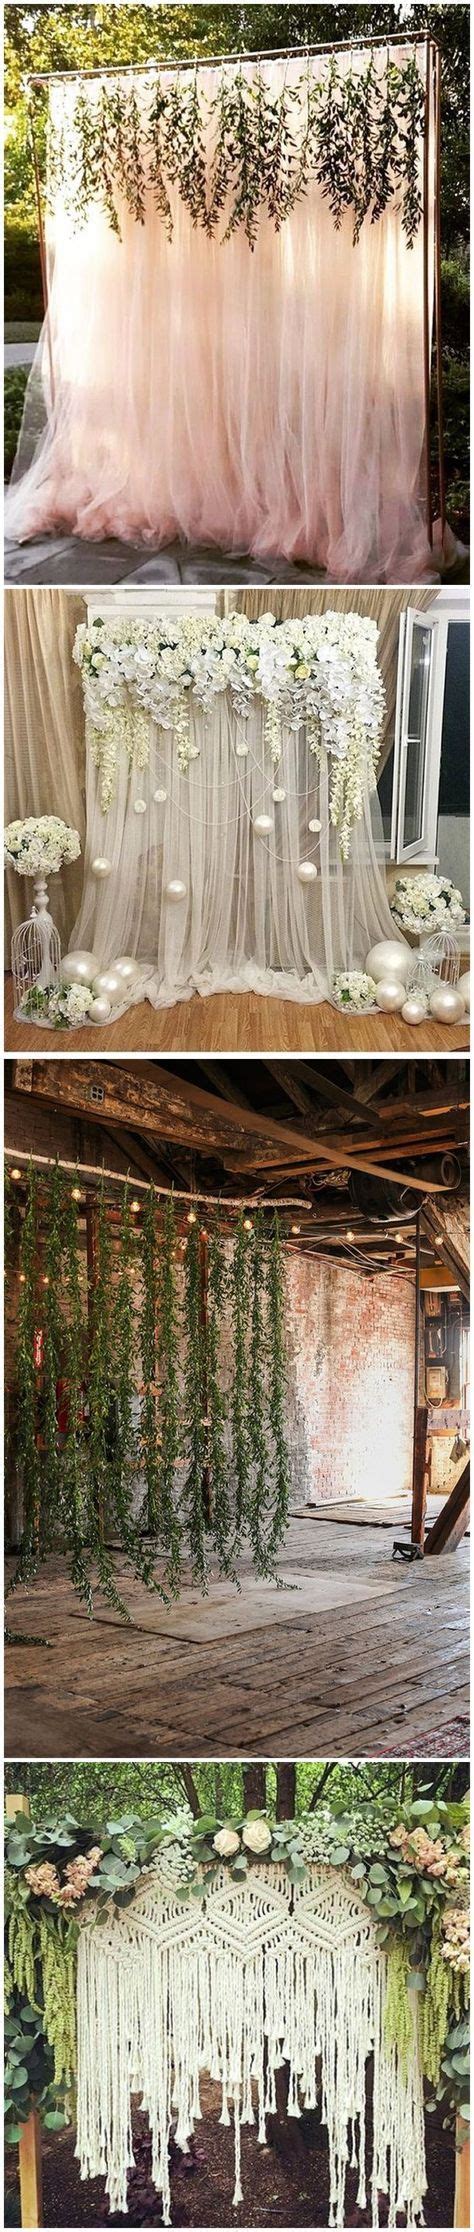 Rustic Weddings 30 Unique And Breathtaking Wedding Backdrop Ideas ️